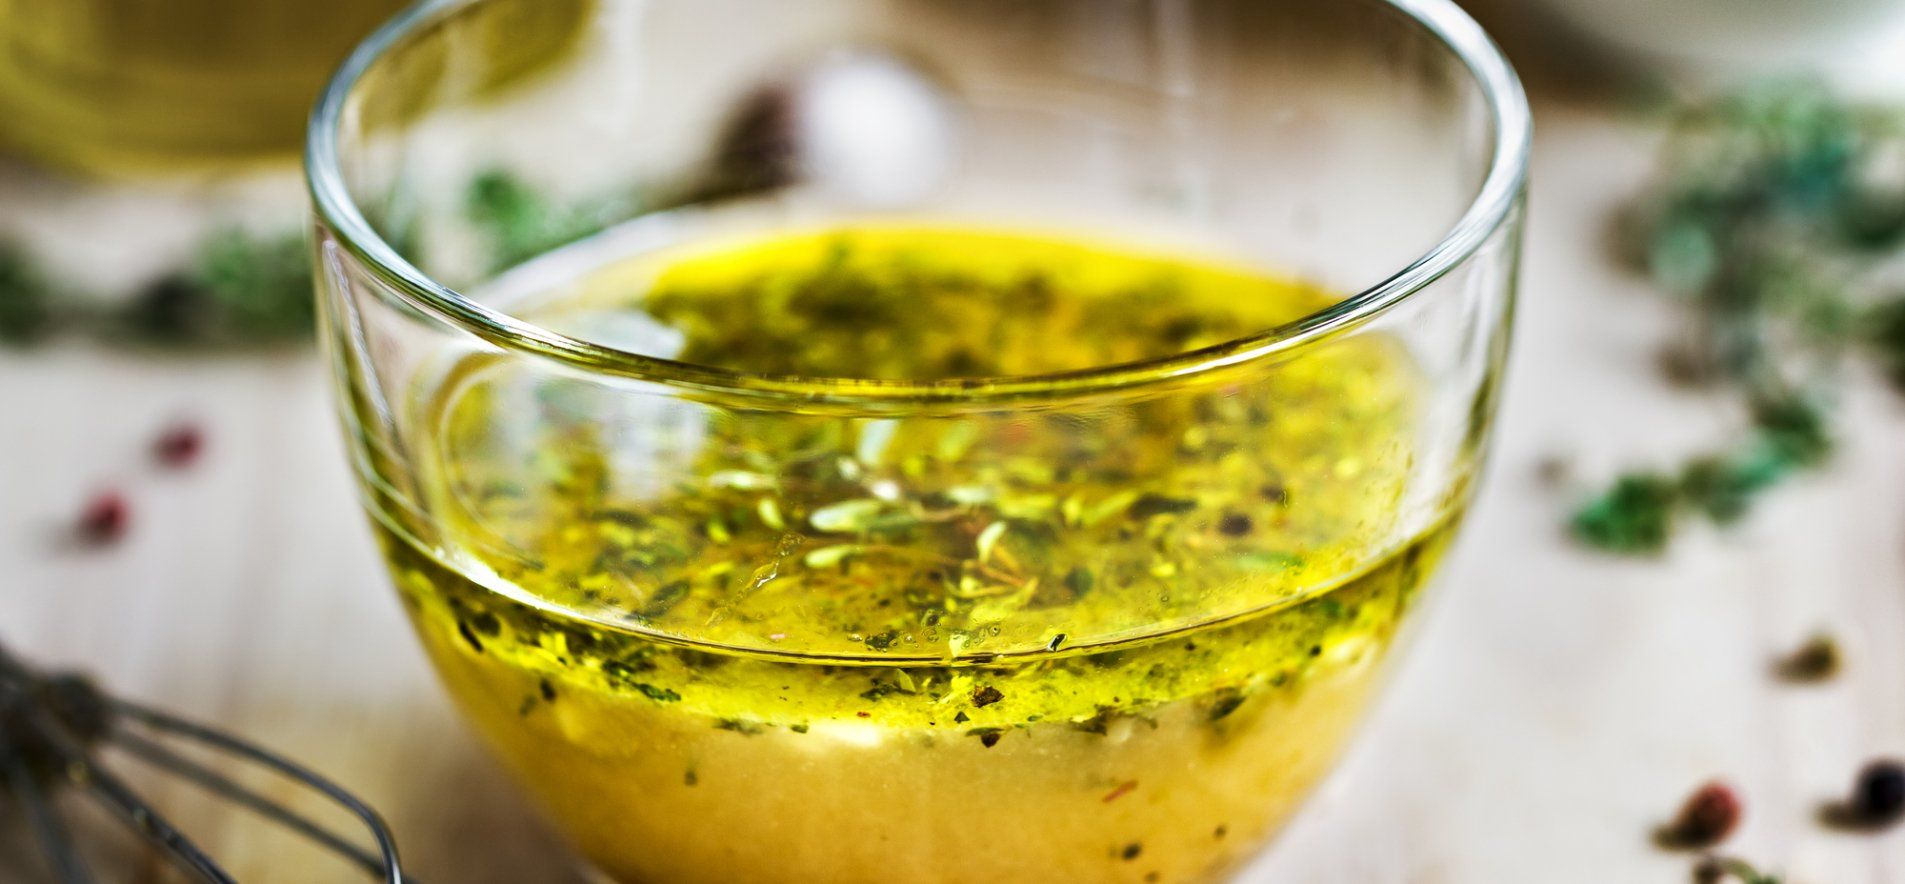 Заправка для салата - приготовьте с лимонным соком и маслом - проверенный рецепт - Новости Вкусно